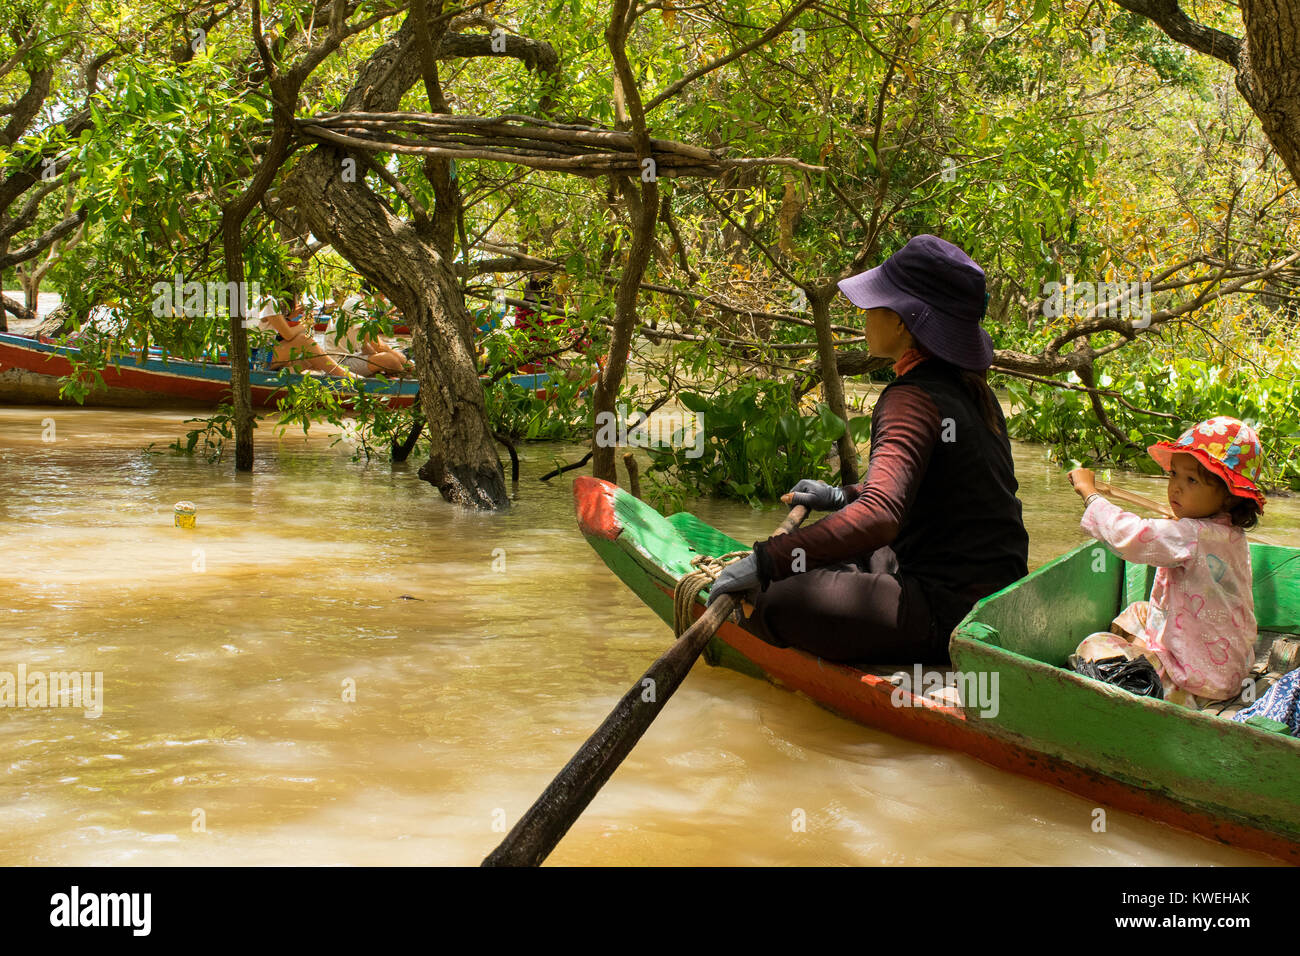 Jeune asiatique cambodgienne et de canots, fille d'explorer la forêt flottante forêt inondée à Kampong Phluk, lac Tonle Sap au Cambodge Banque D'Images